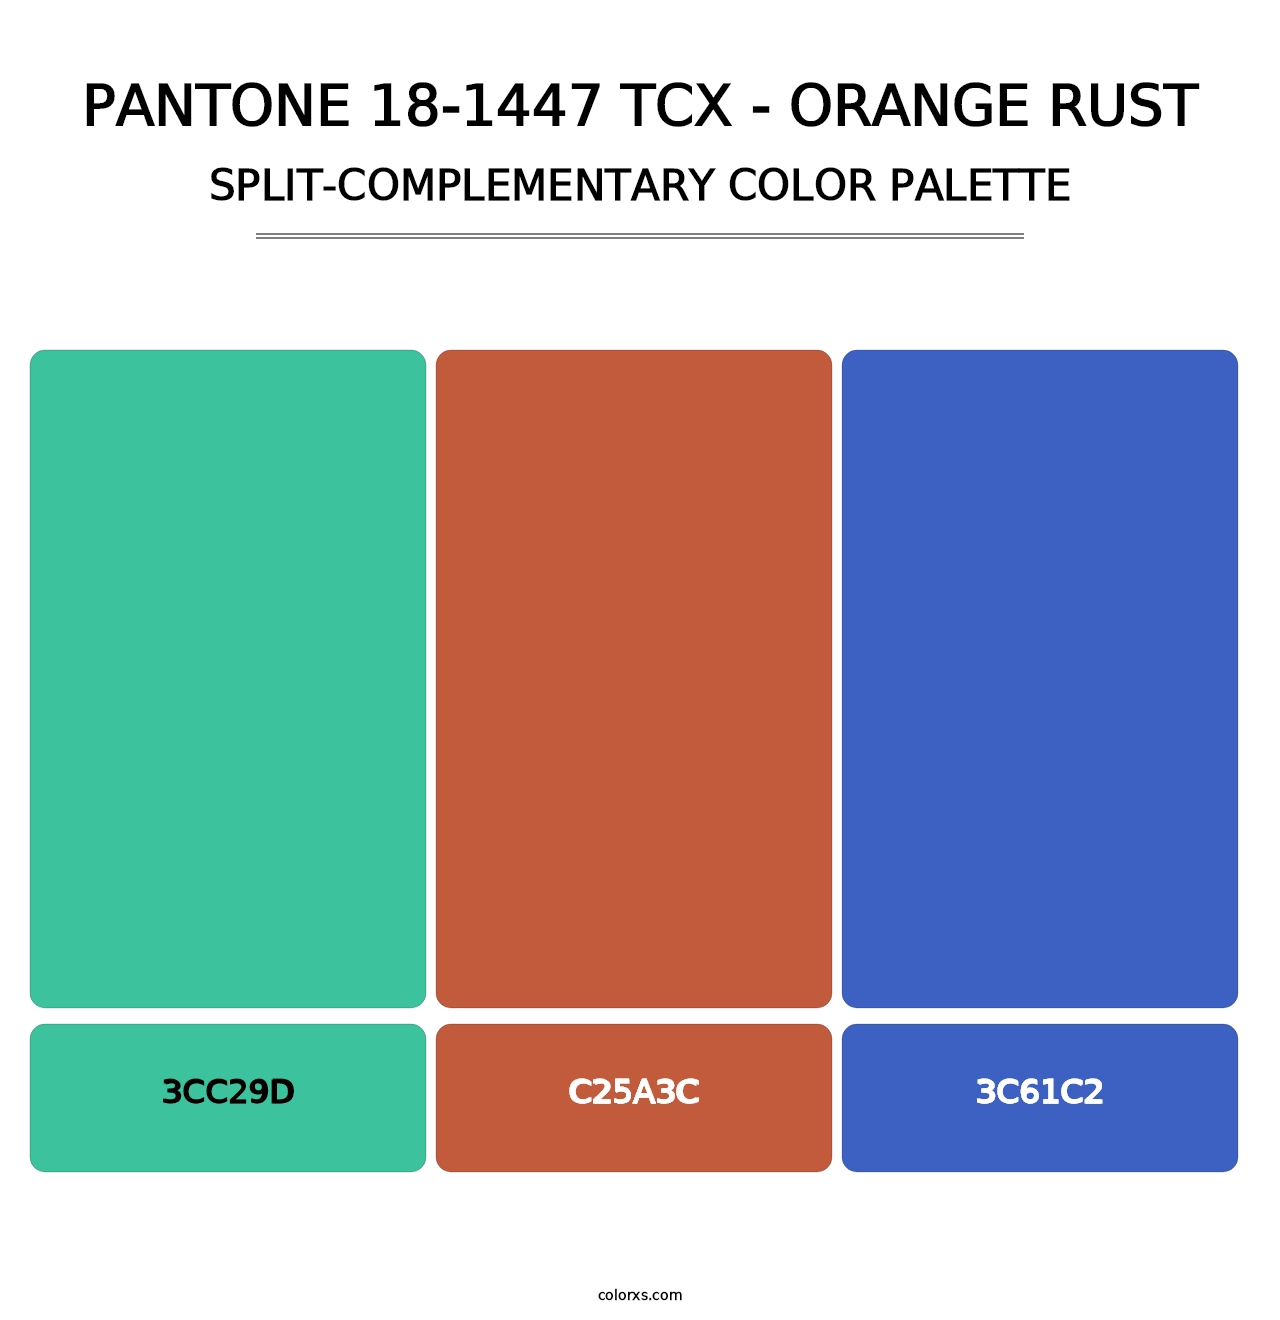 PANTONE 18-1447 TCX - Orange Rust - Split-Complementary Color Palette